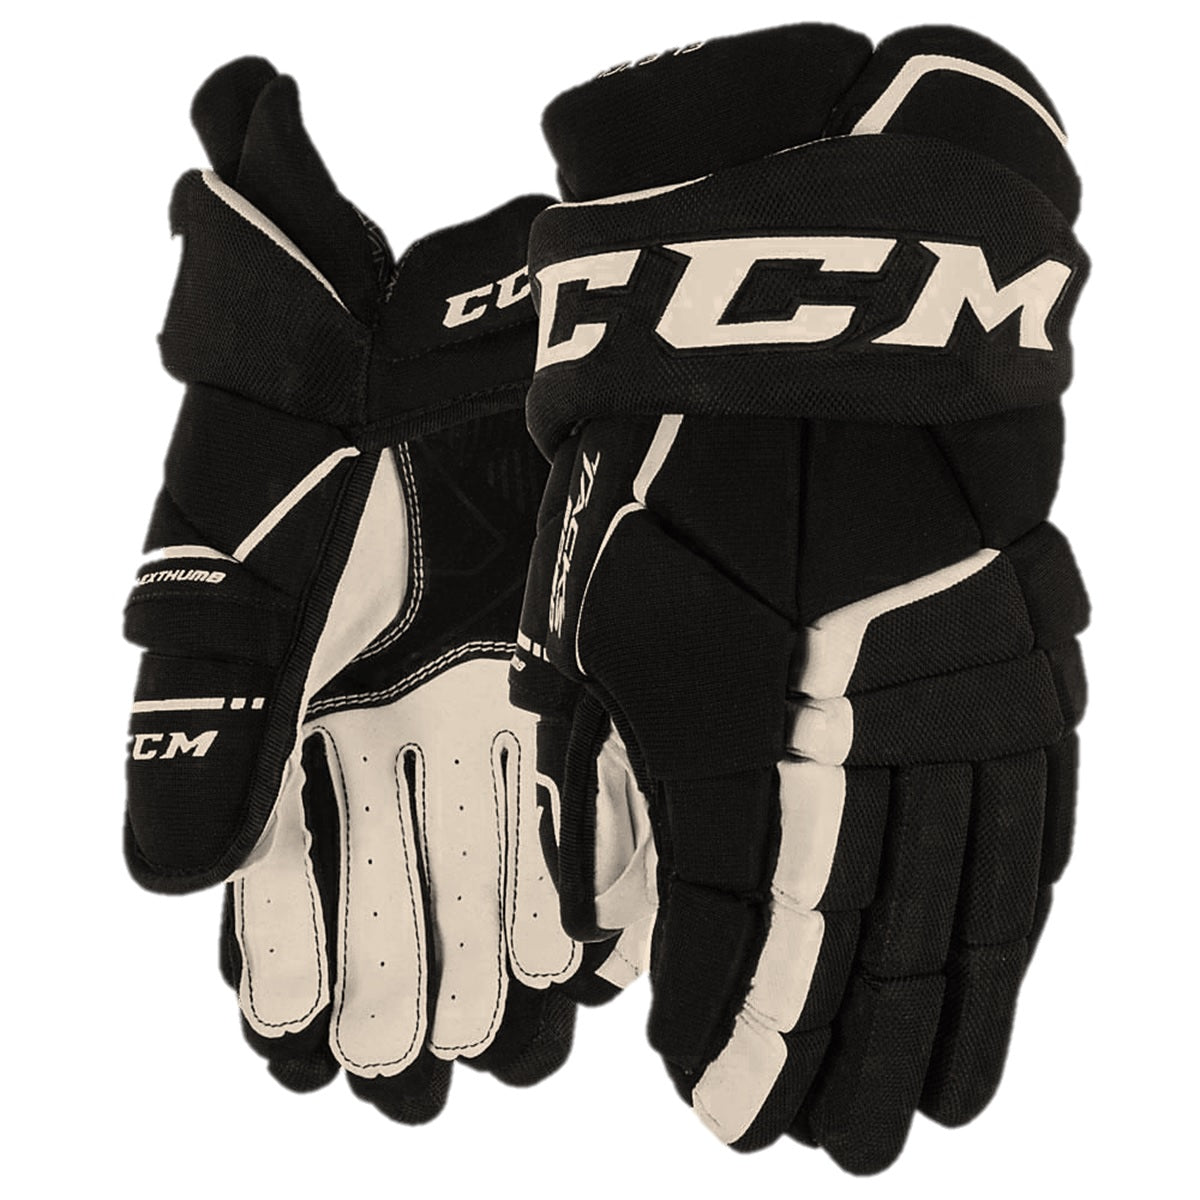 CCM Eishockey Handschuhe Tacks 9060 Jr schwarz/weiß 12"